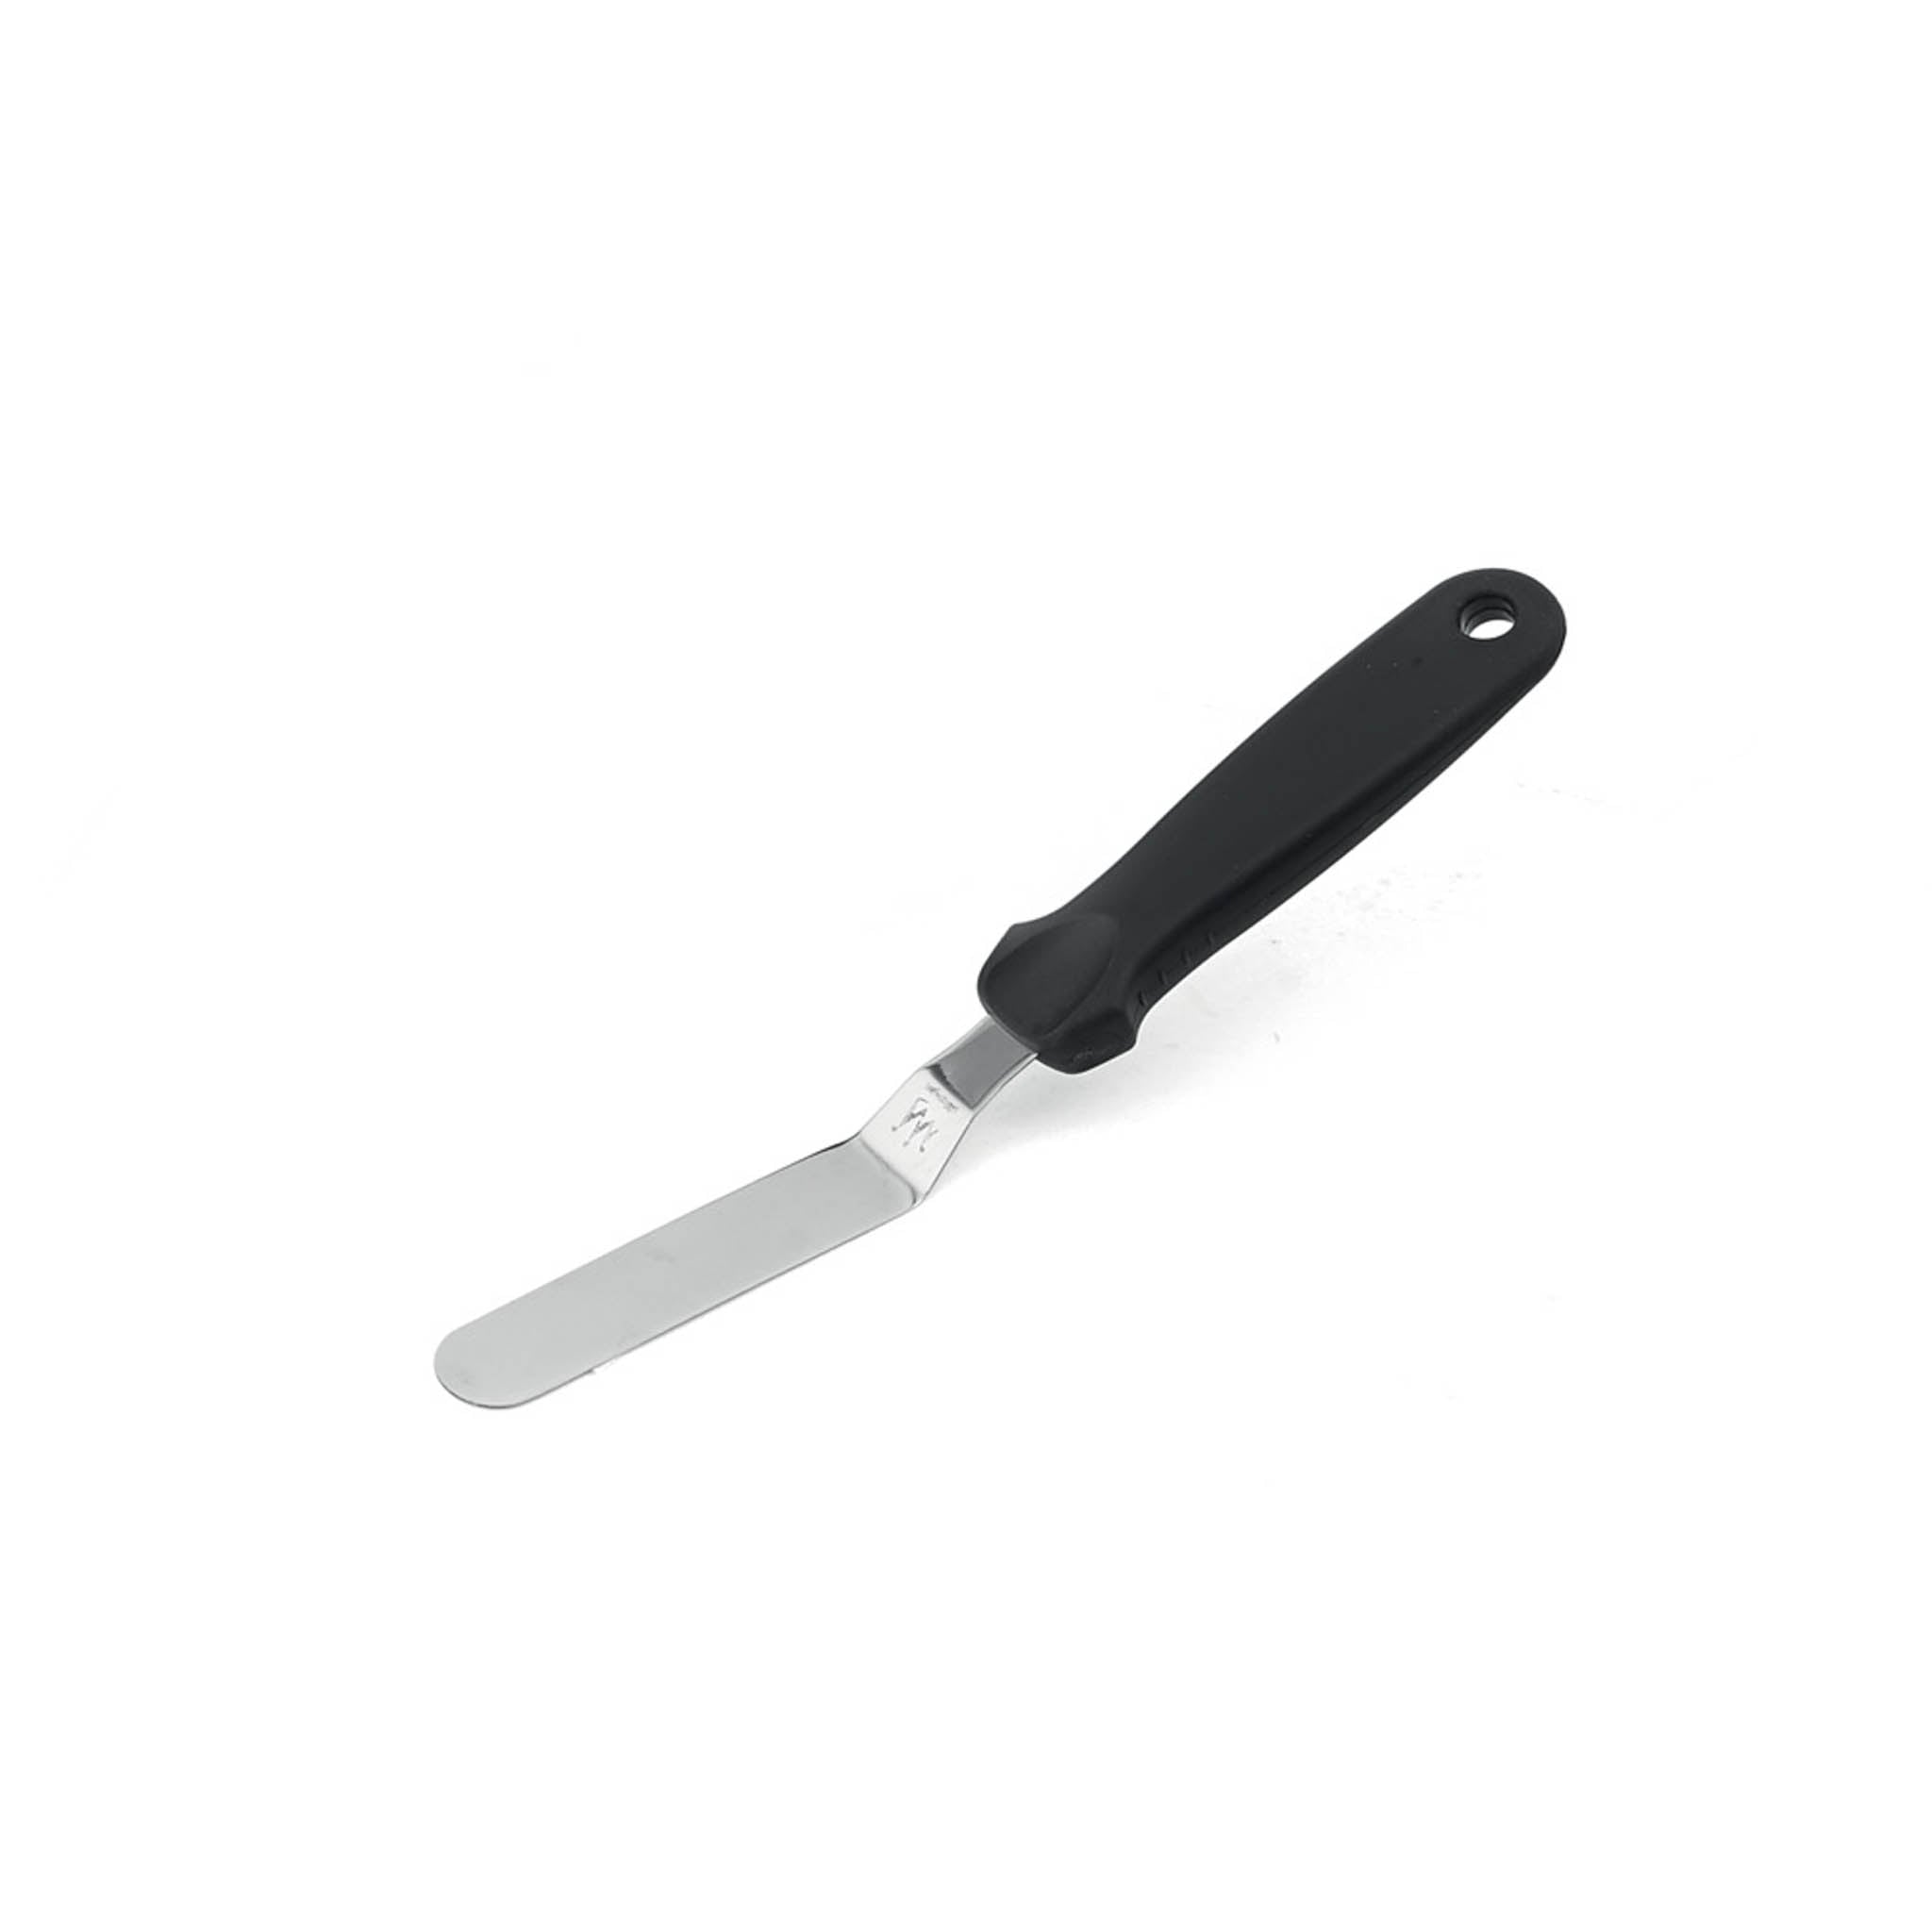 Silikomart Offset Palette Knife 9cm